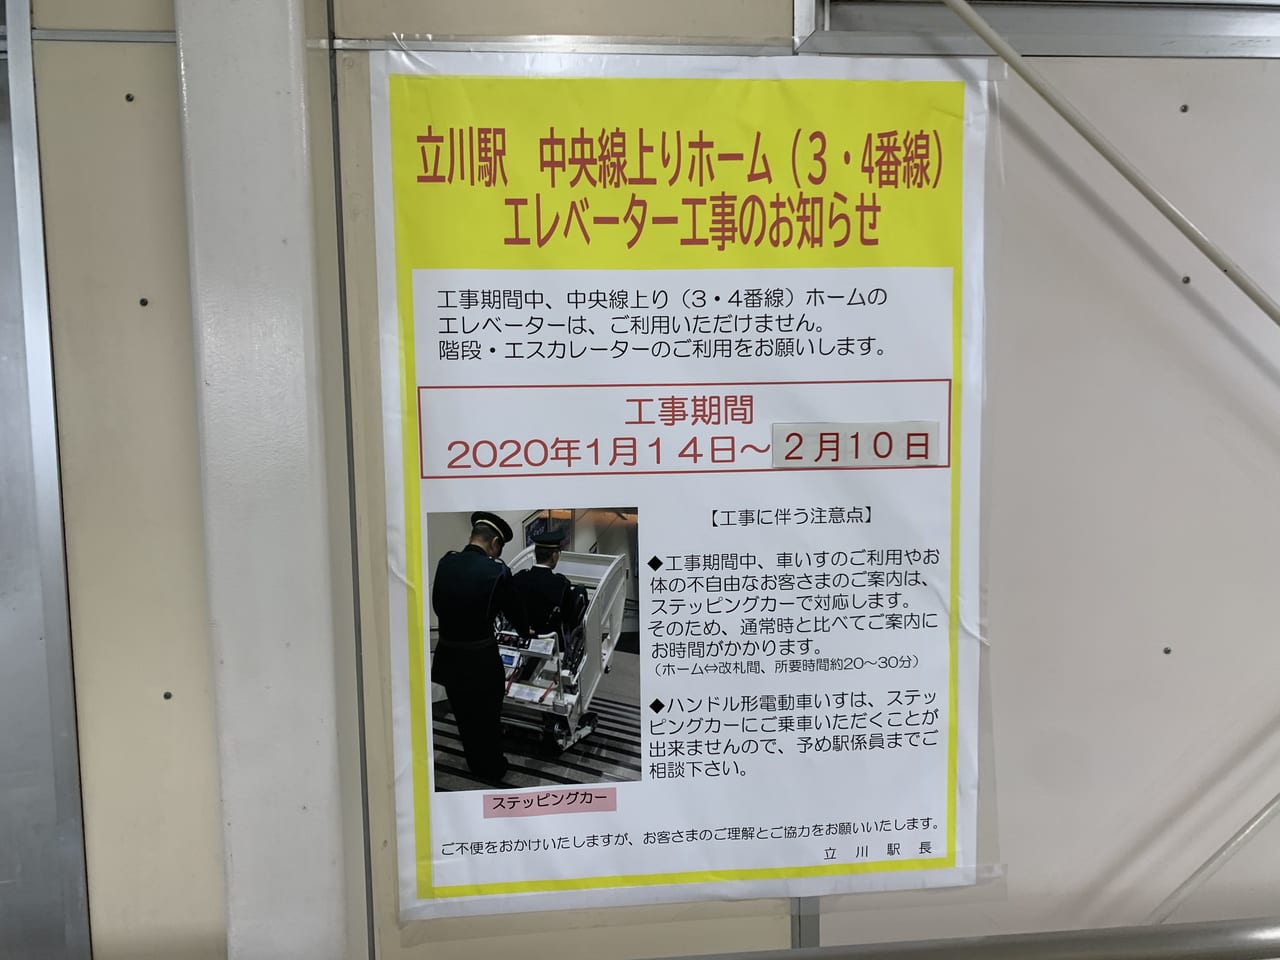 立川駅エレベーター工事終了